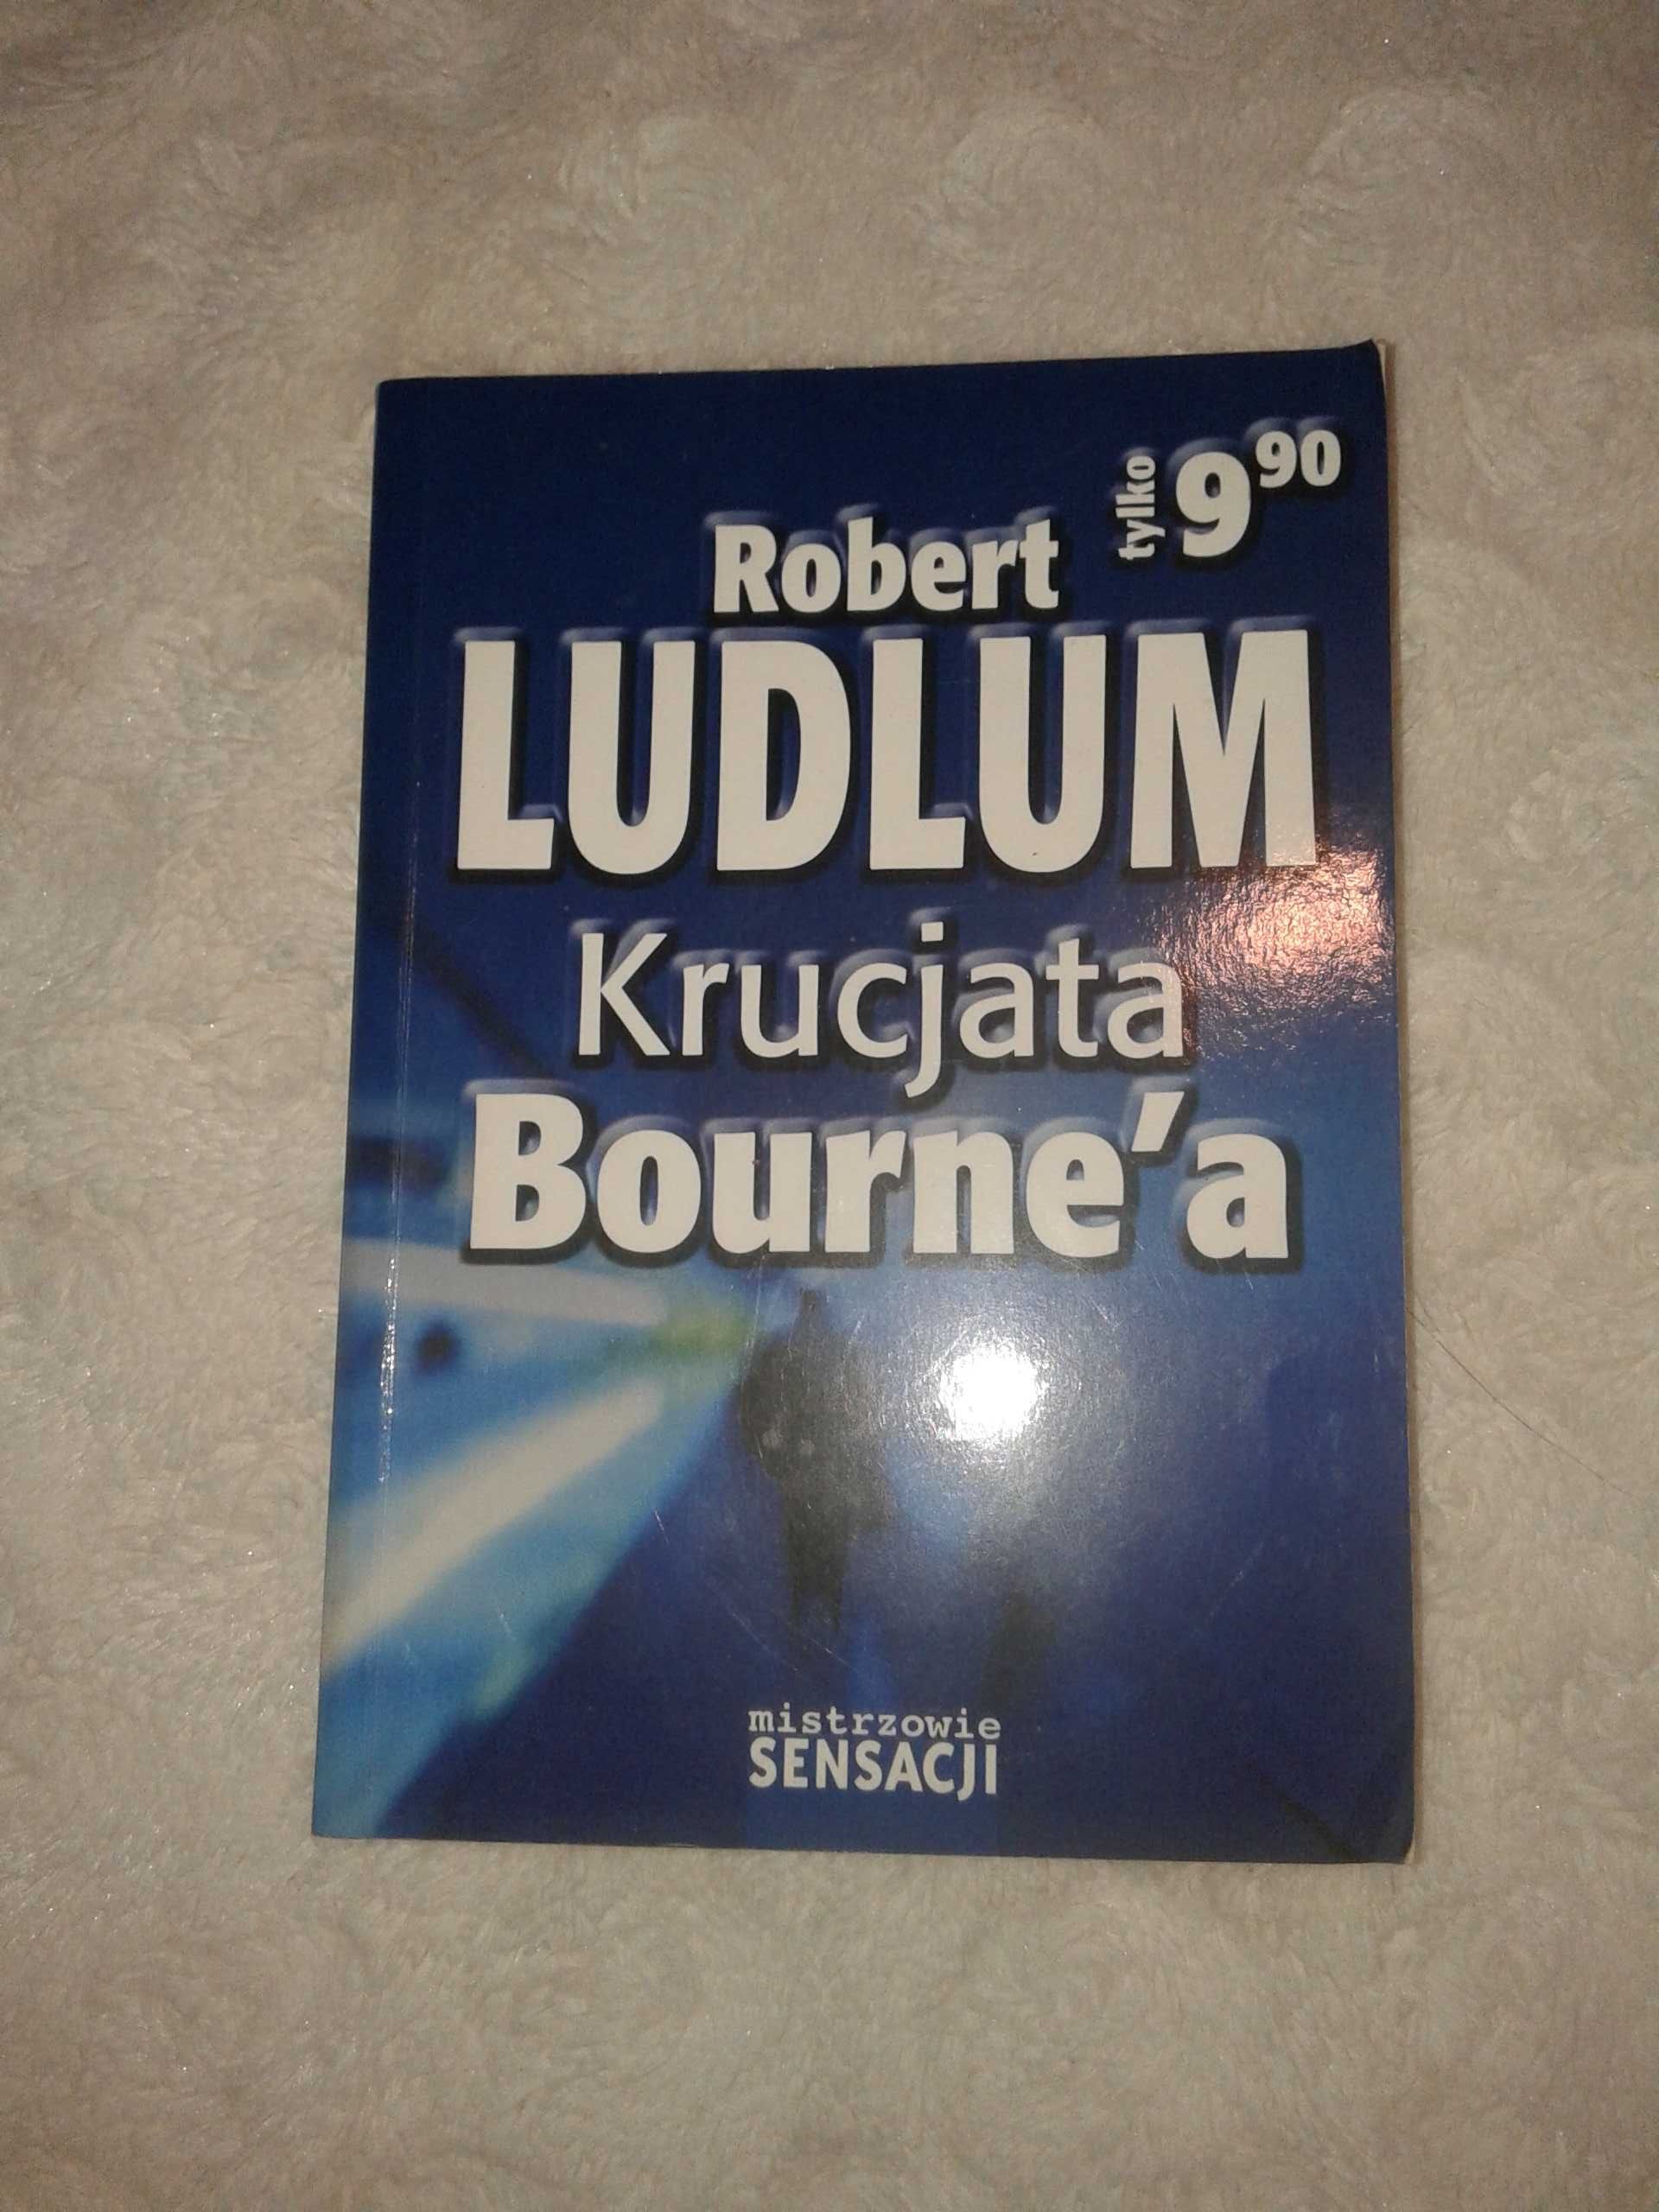 Krucjata Bourne a - Robert Ludlum - sensacja.